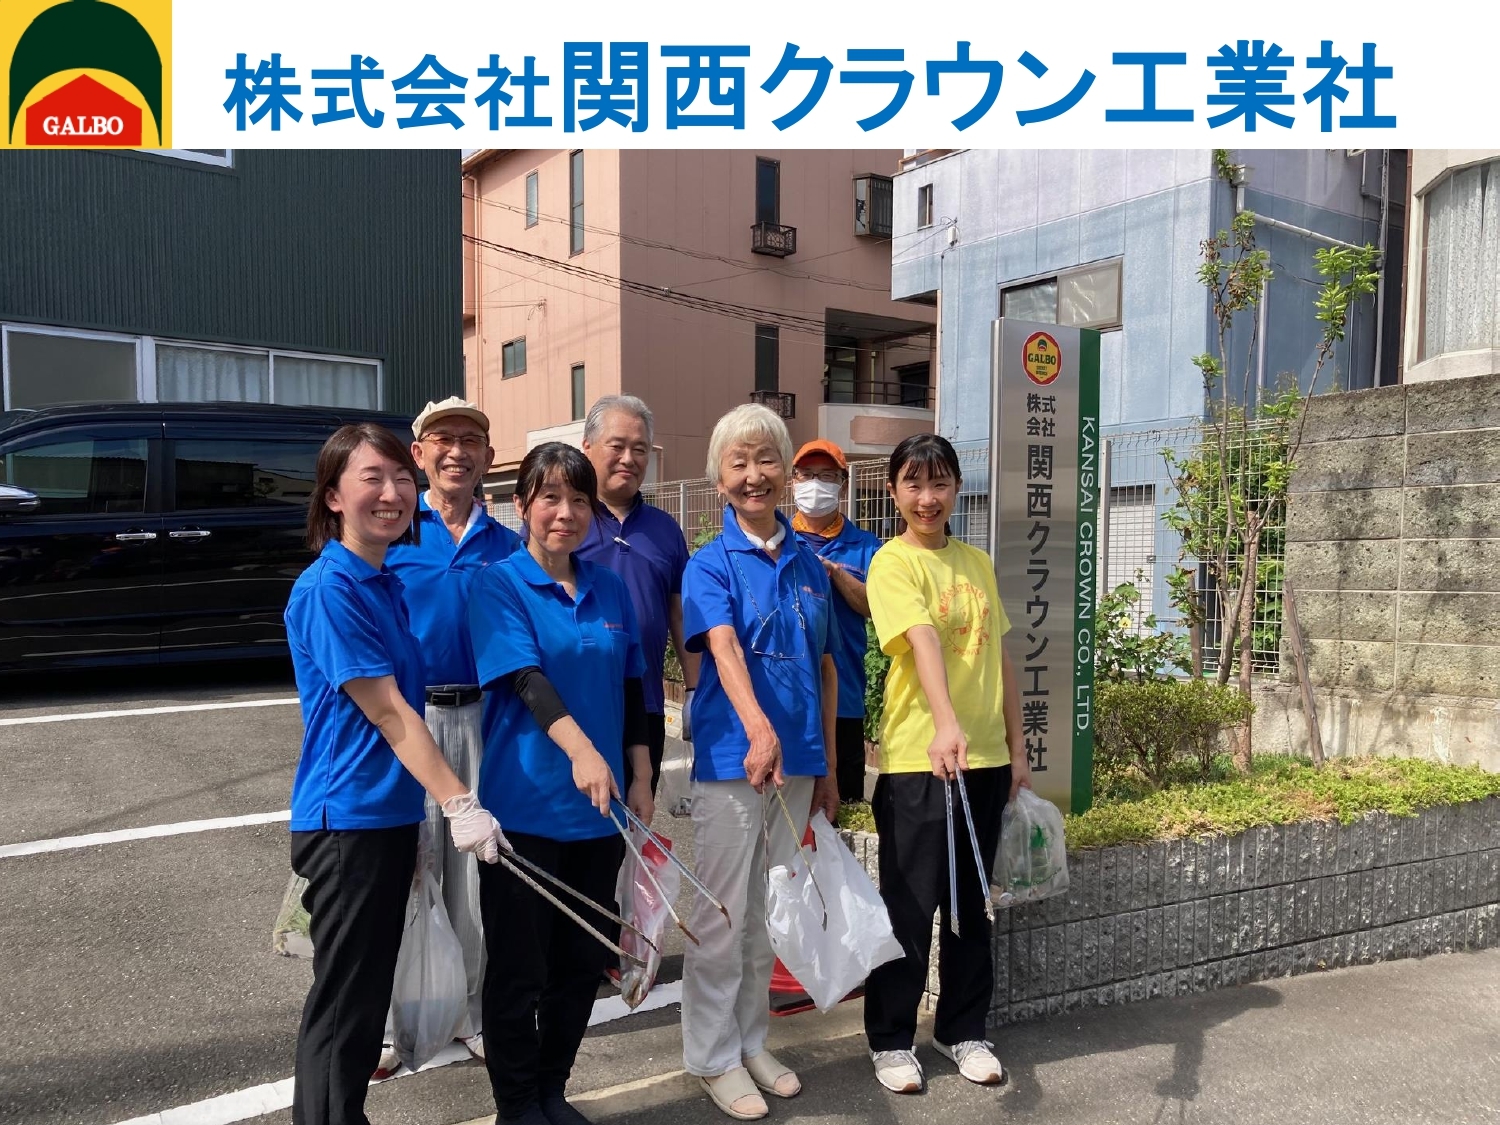  関西クラウン工業社の清掃画像です。